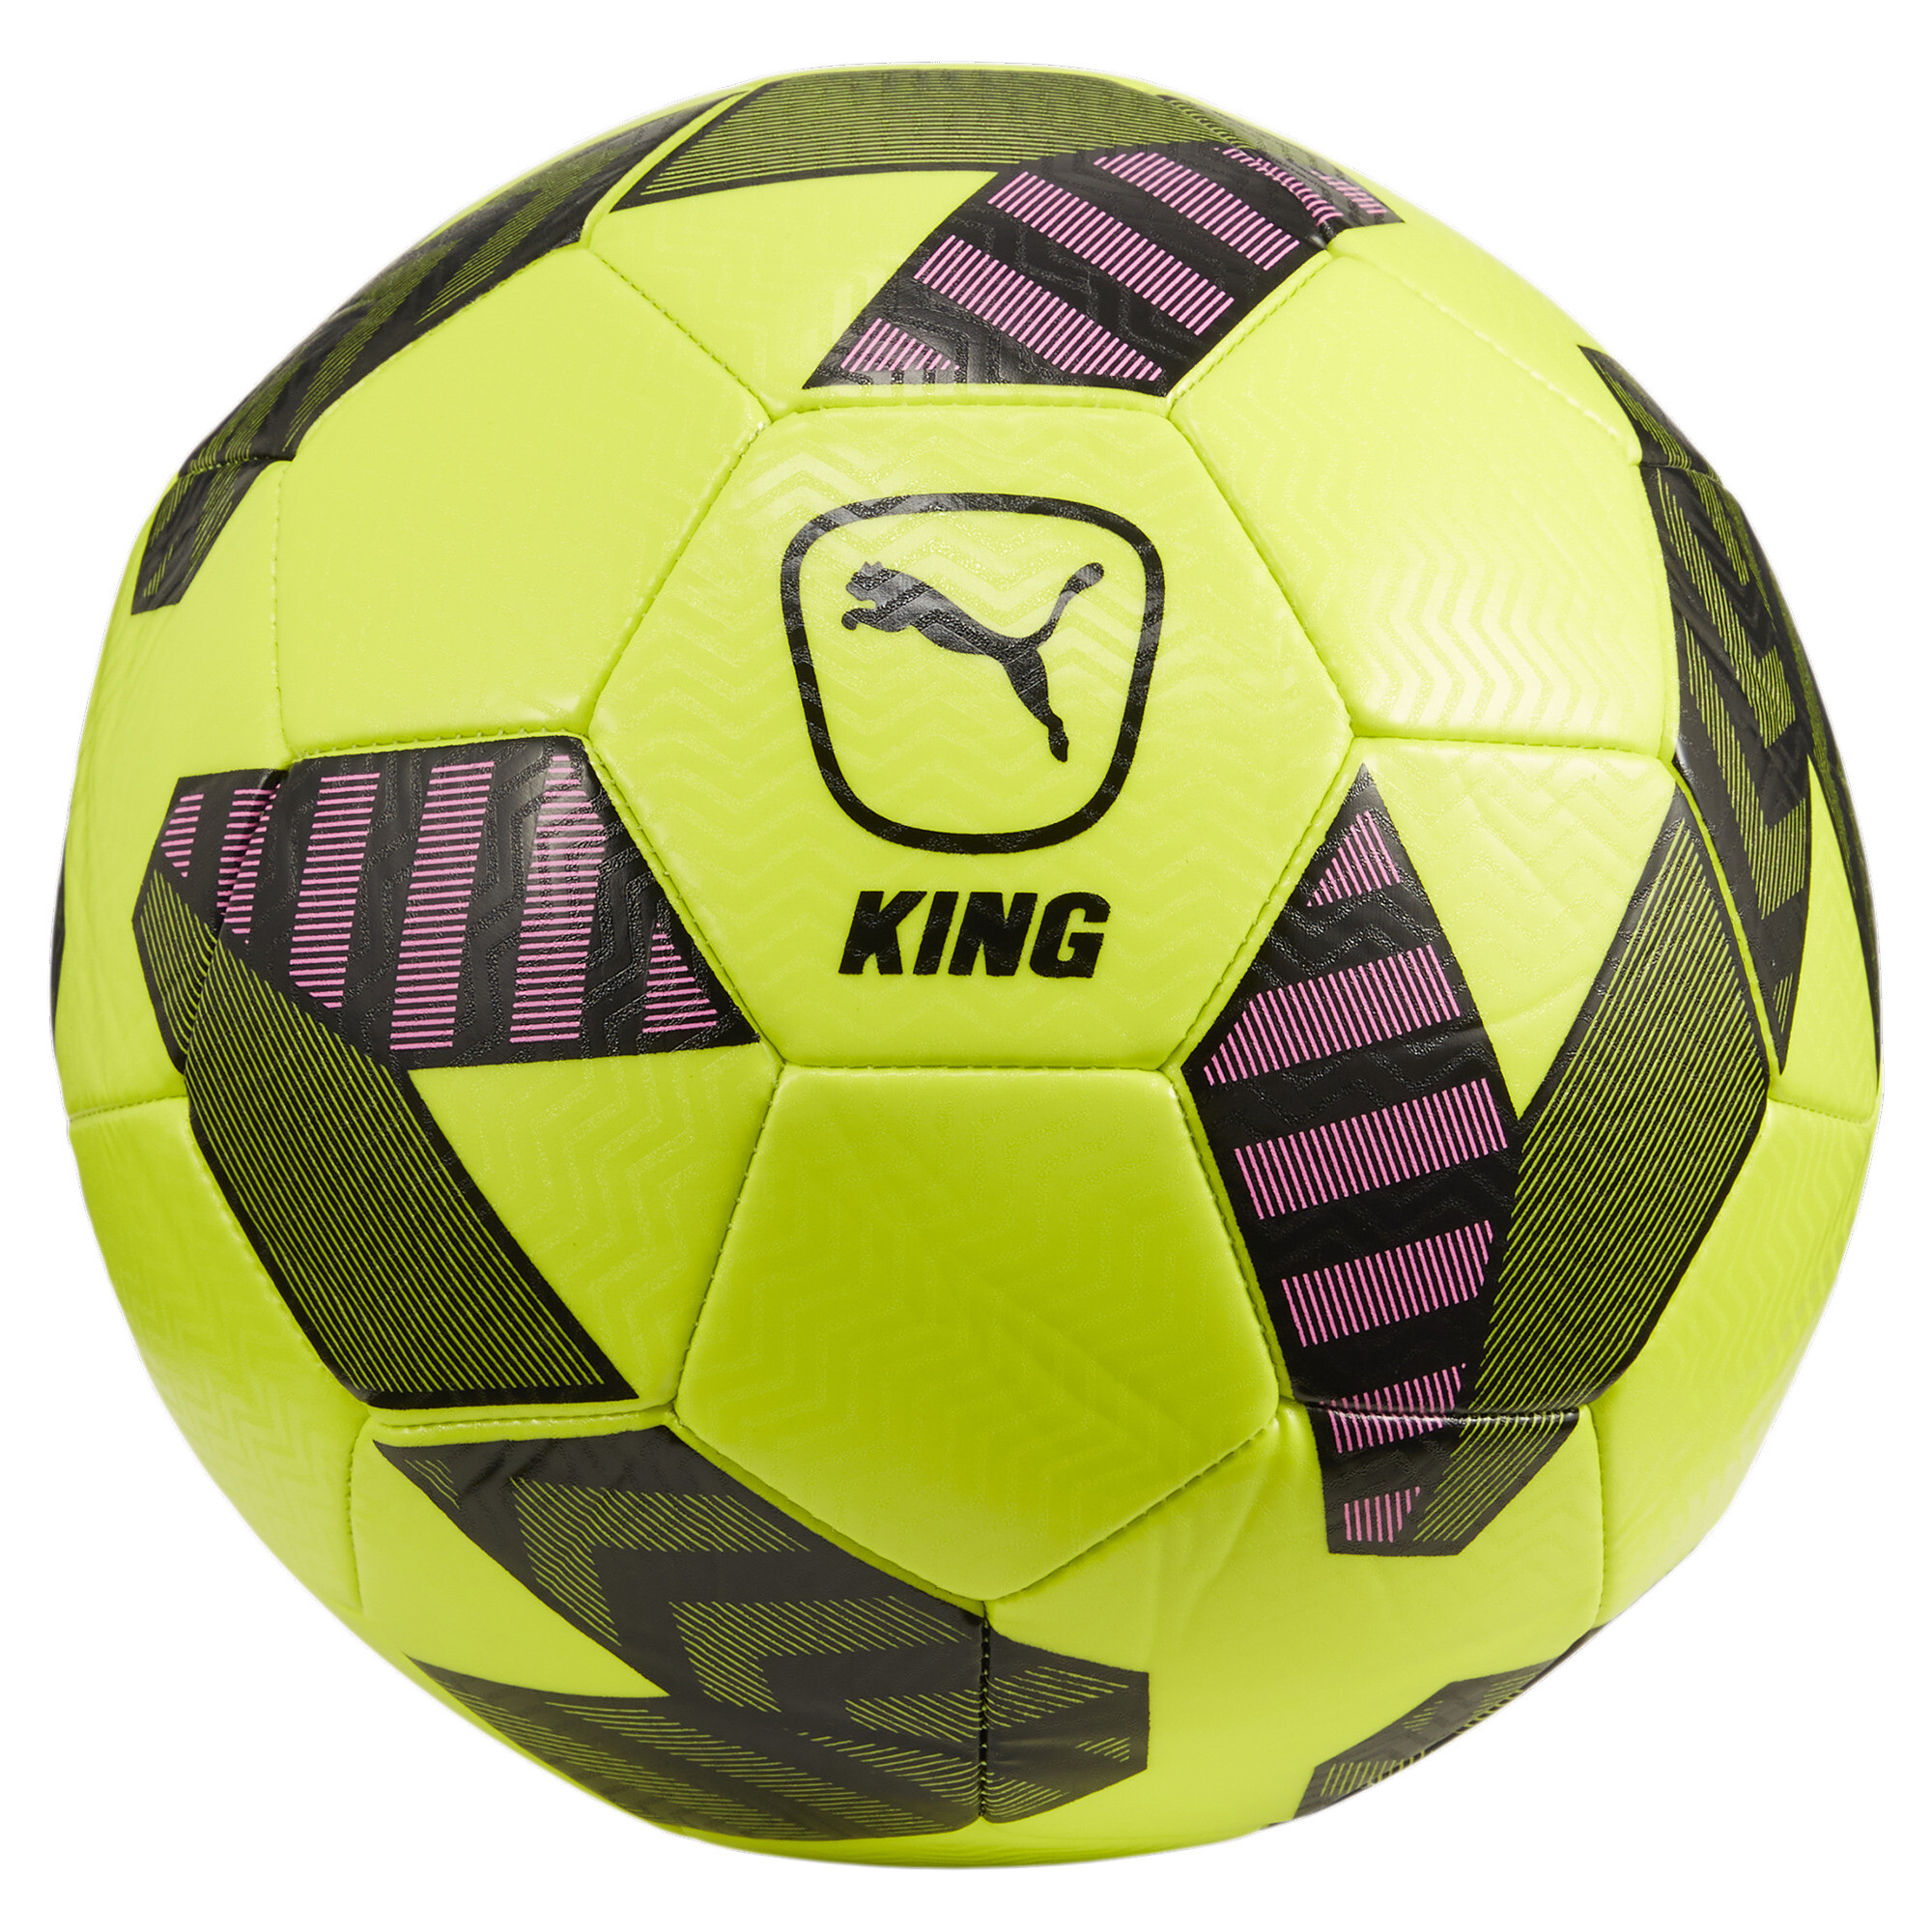 Puma King Football, Green, Size 4, Accessories